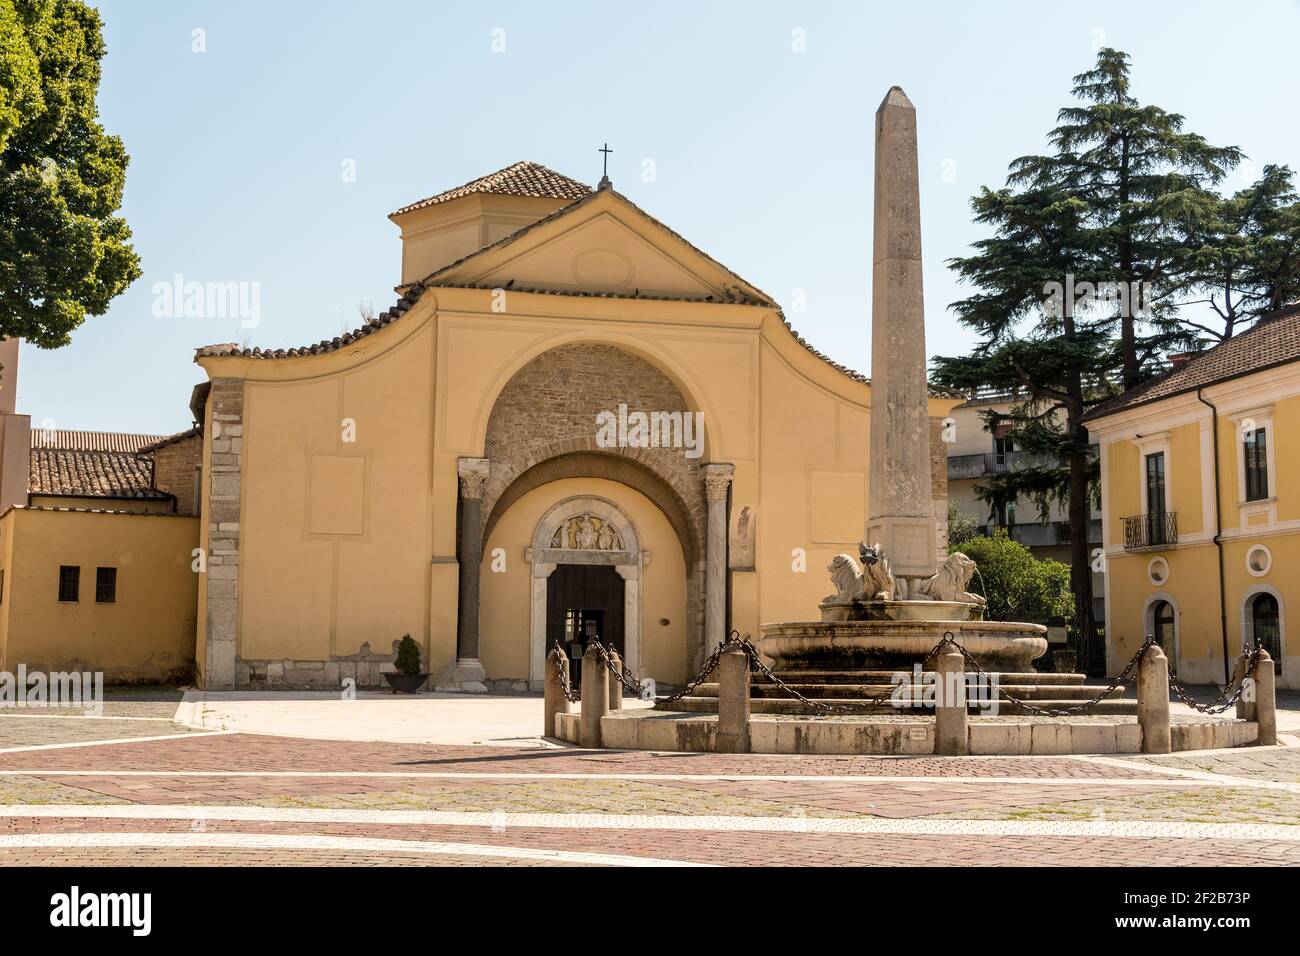 Santa Sofia est une église catholique romaine dans la ville de Benevento, dans la région de Campanie, dans le sud de l'Italie; fondée à la fin du VIIIe siècle, elle ret Banque D'Images